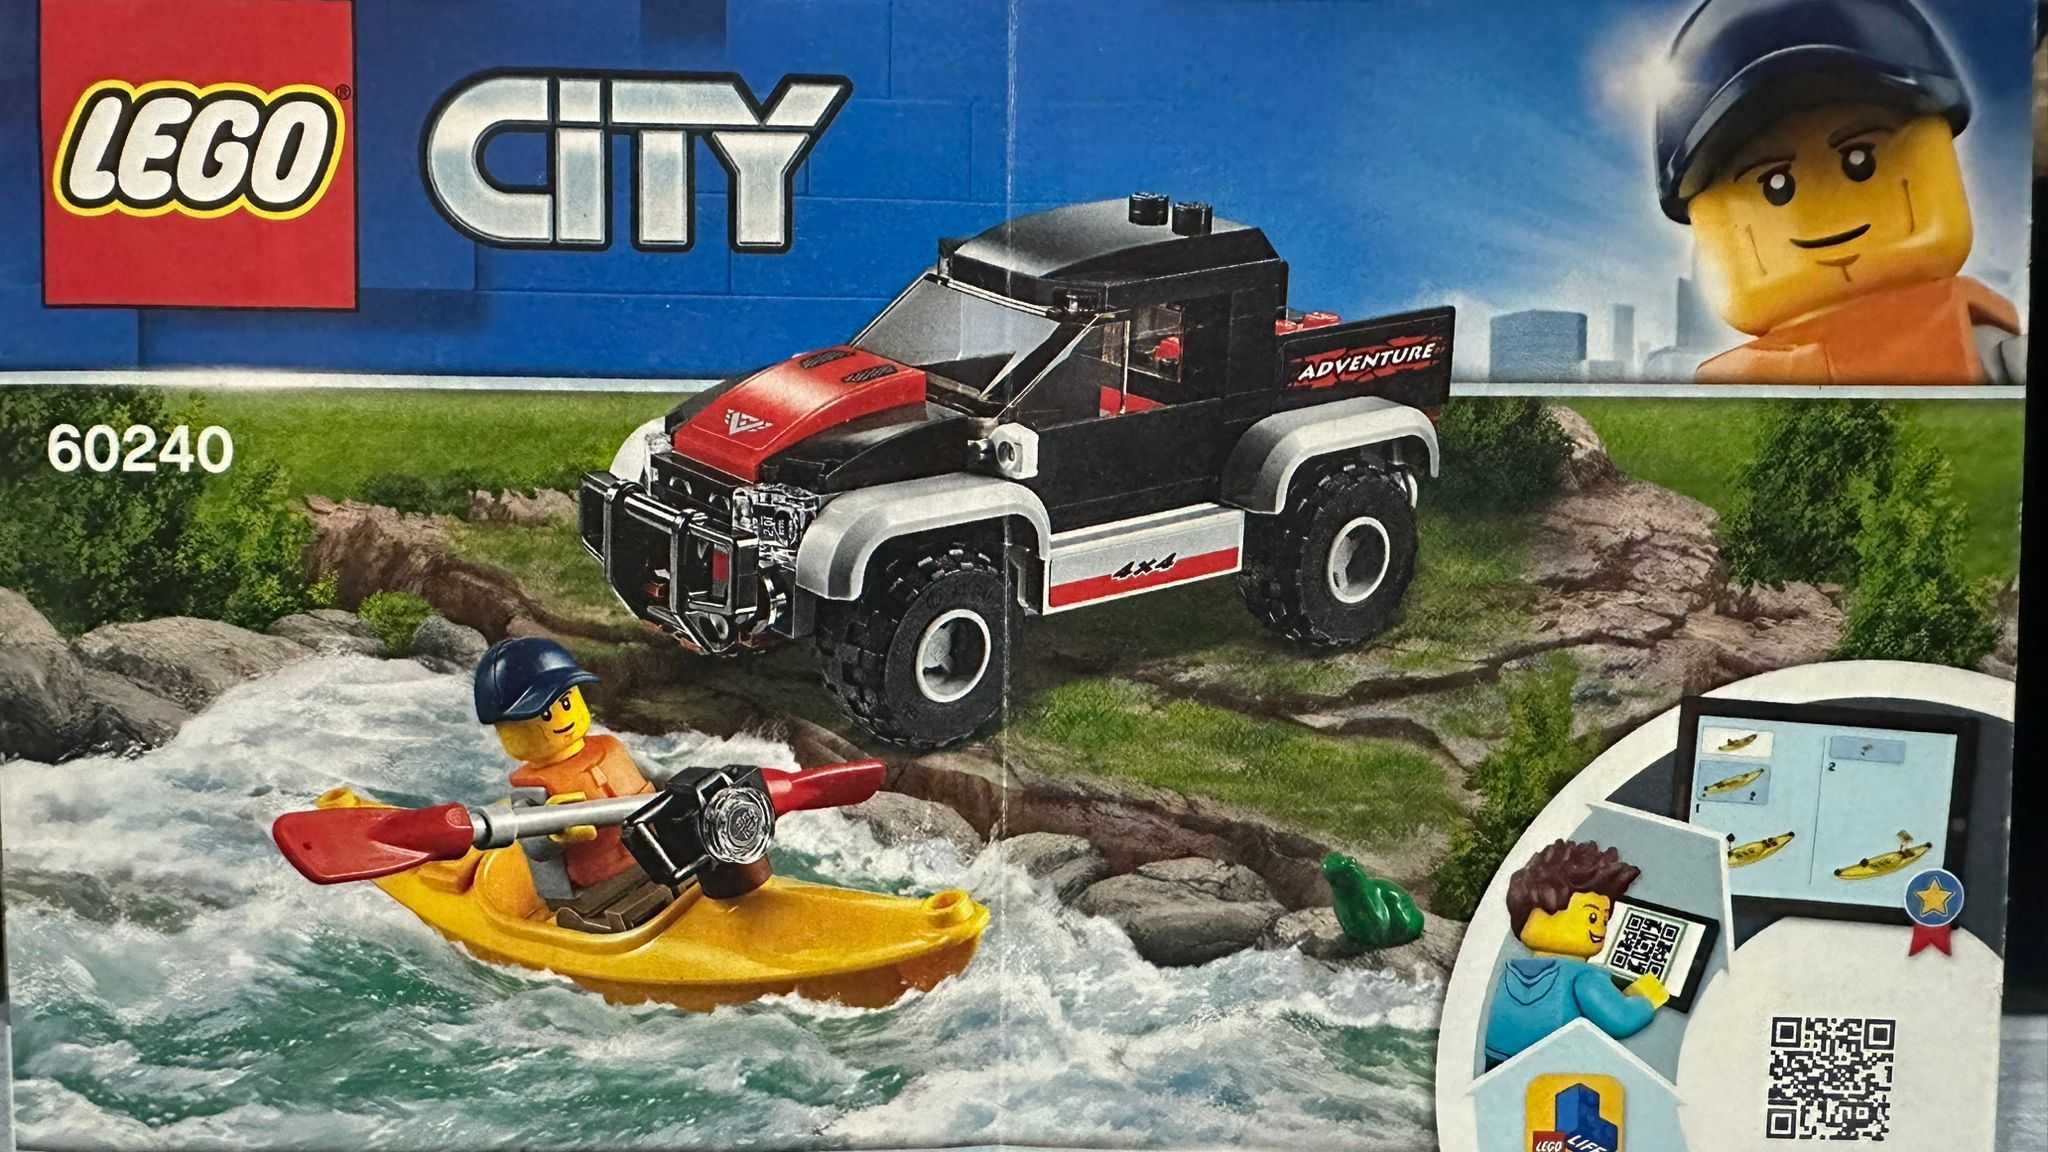 Lego City 60240 - Masina de teren si caiac